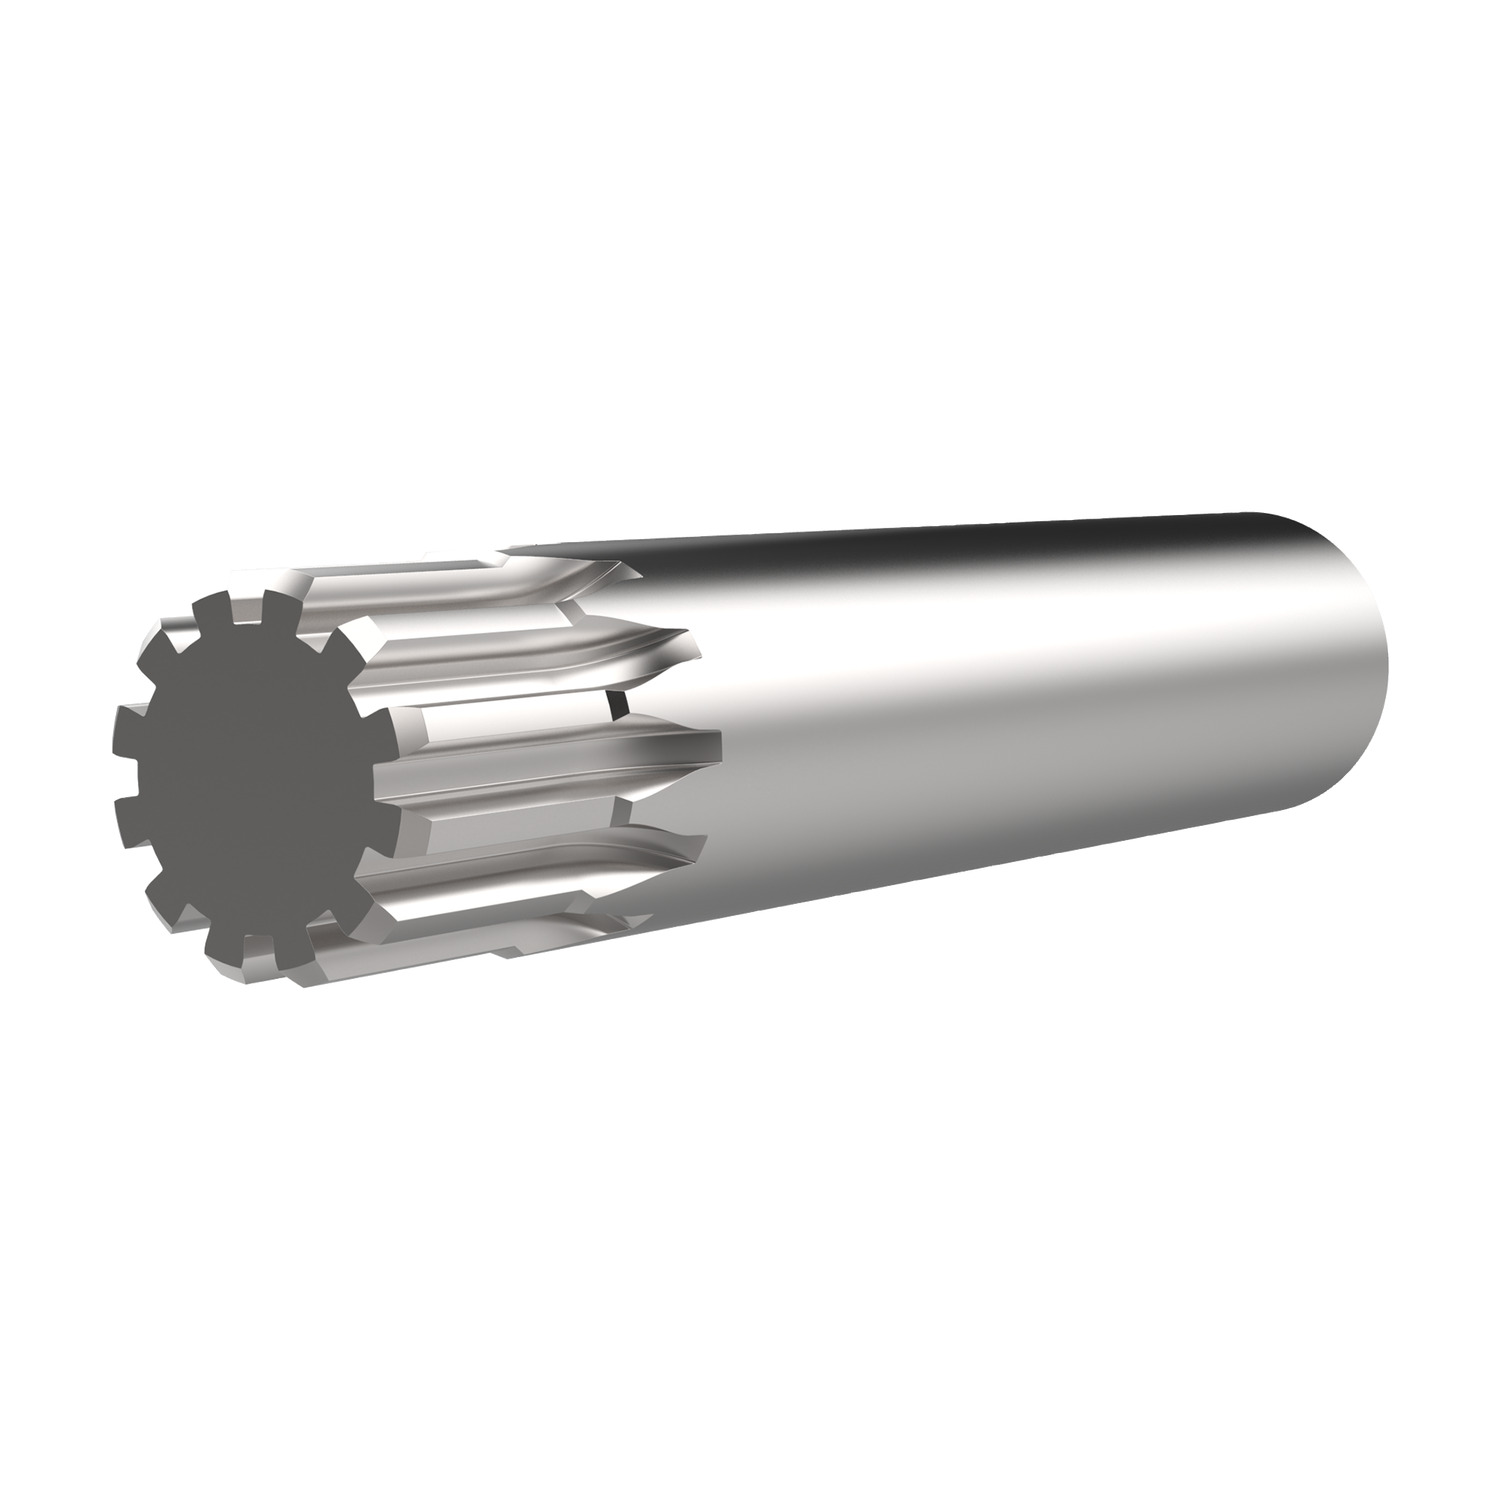 Product R5137, Spur Gears - Module 0.75 - Steel carbon steel - 10-12 teeth / 